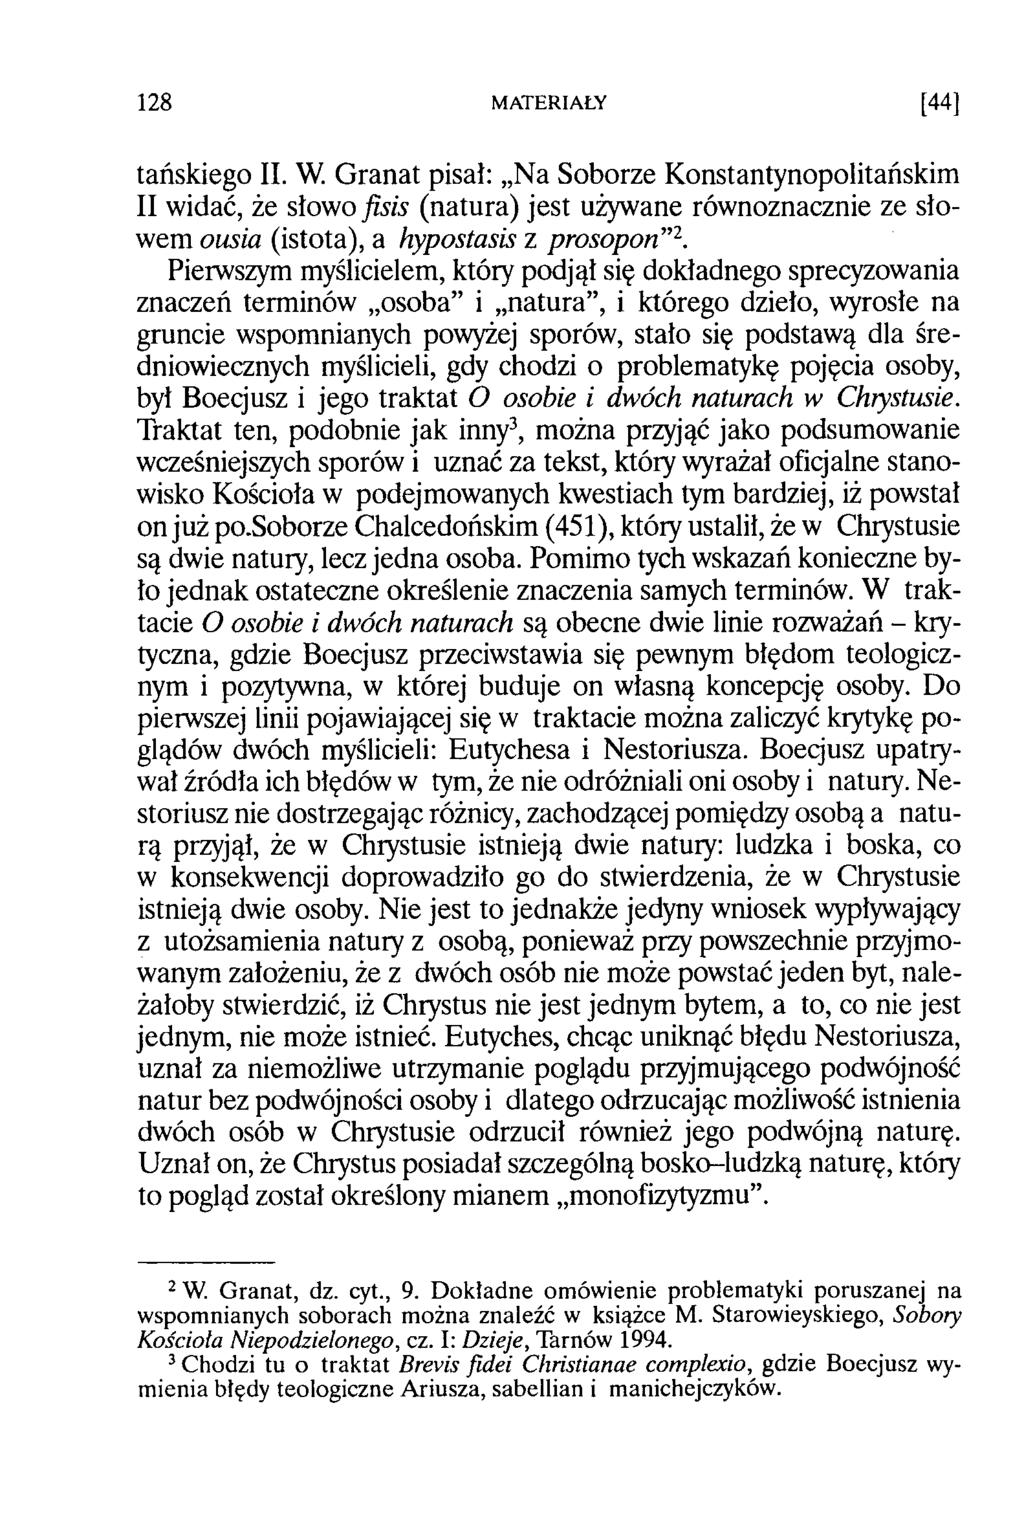 tańskiego II. W. Granat pisał: Na Soborze Konstantynopolitańskim II widać, że słowo fisis (natura) jest używane równoznacznie ze słowem ousia (istota), a hypostasis z prosopon 2.